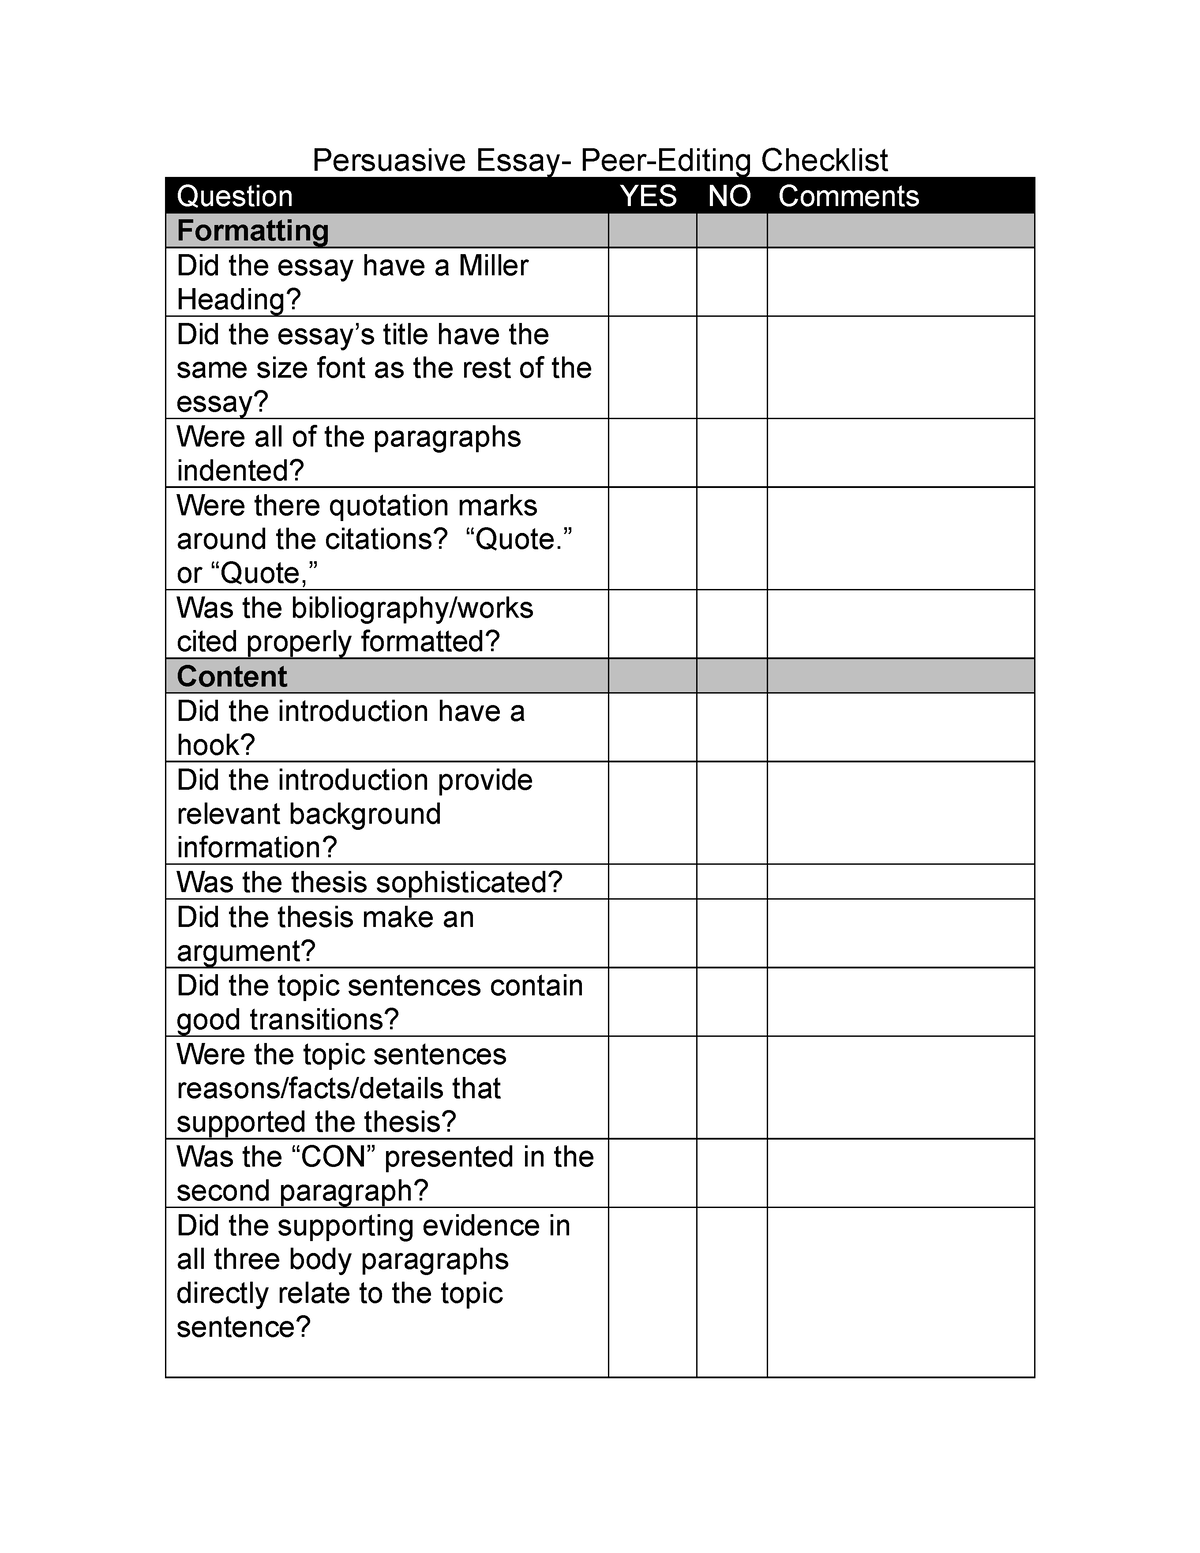 peer editing argumentative essay checklist